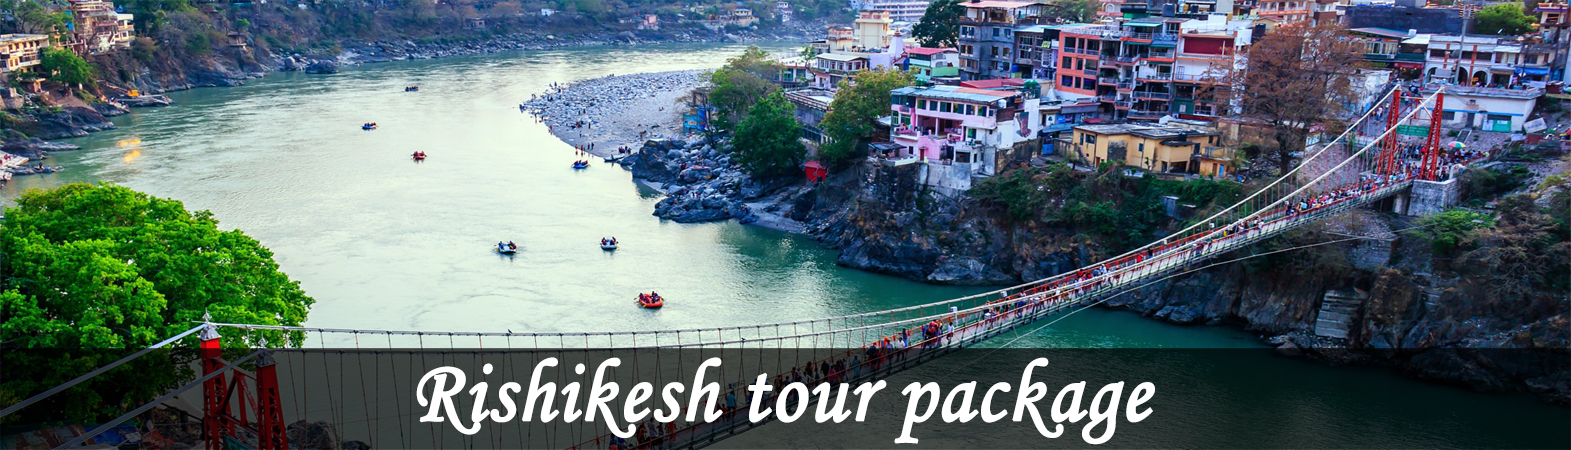 Rishikesh Tour package, Best Rishikesh package in Uttarakhand